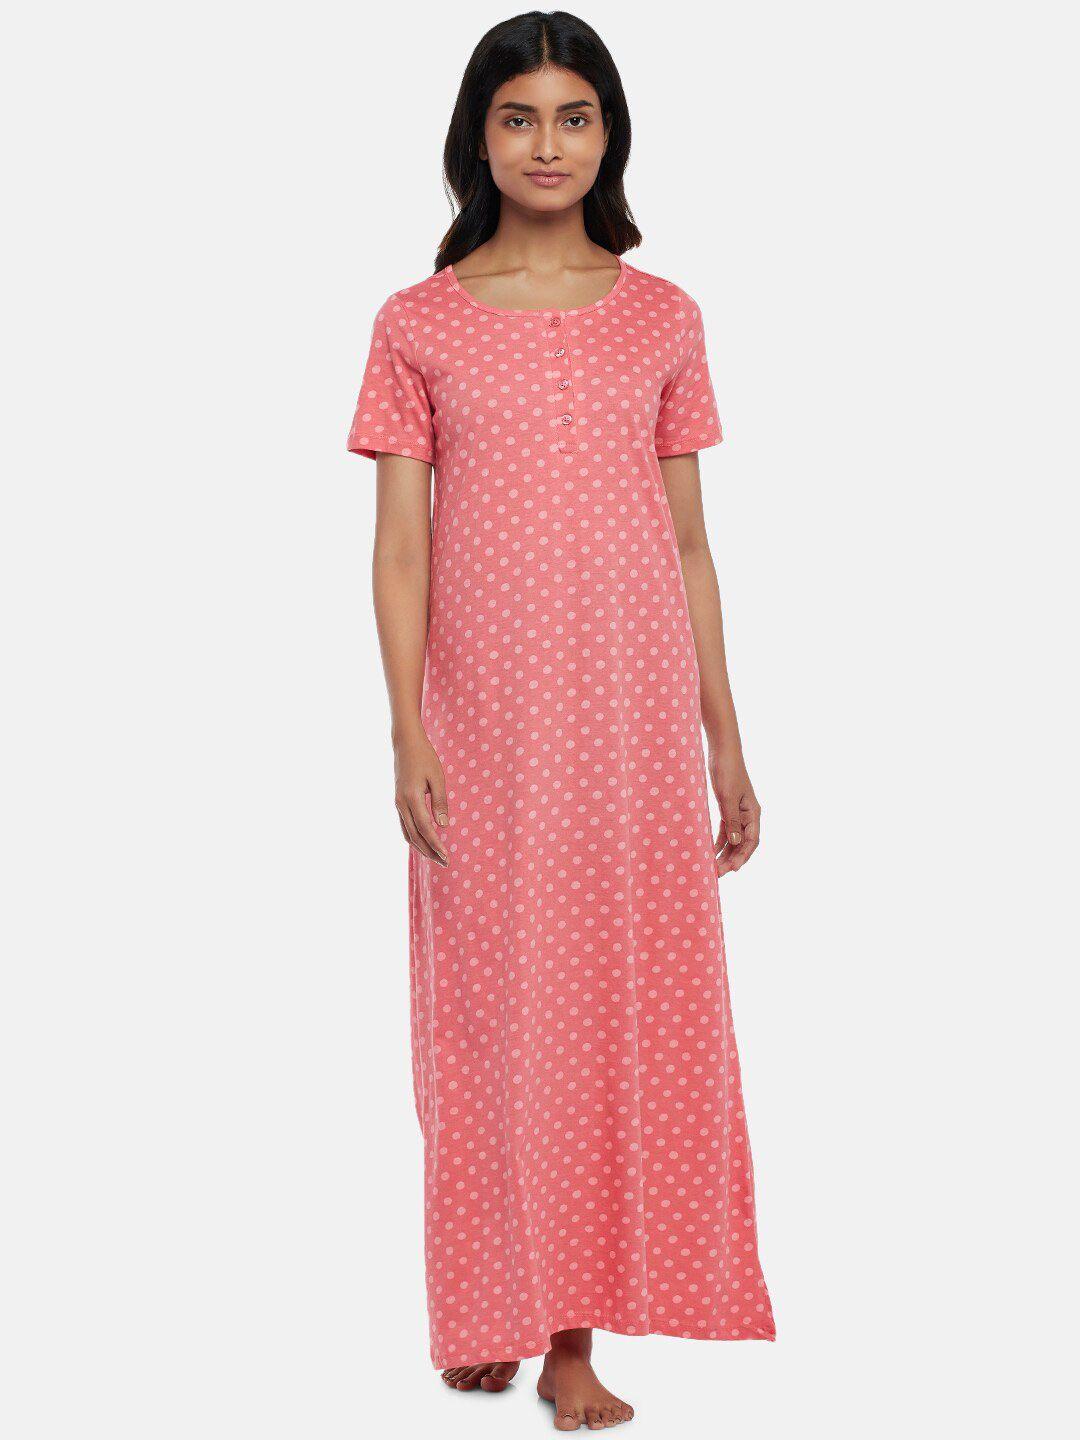 dreamz-by-pantaloons-pink-printed-maxi-nightdress